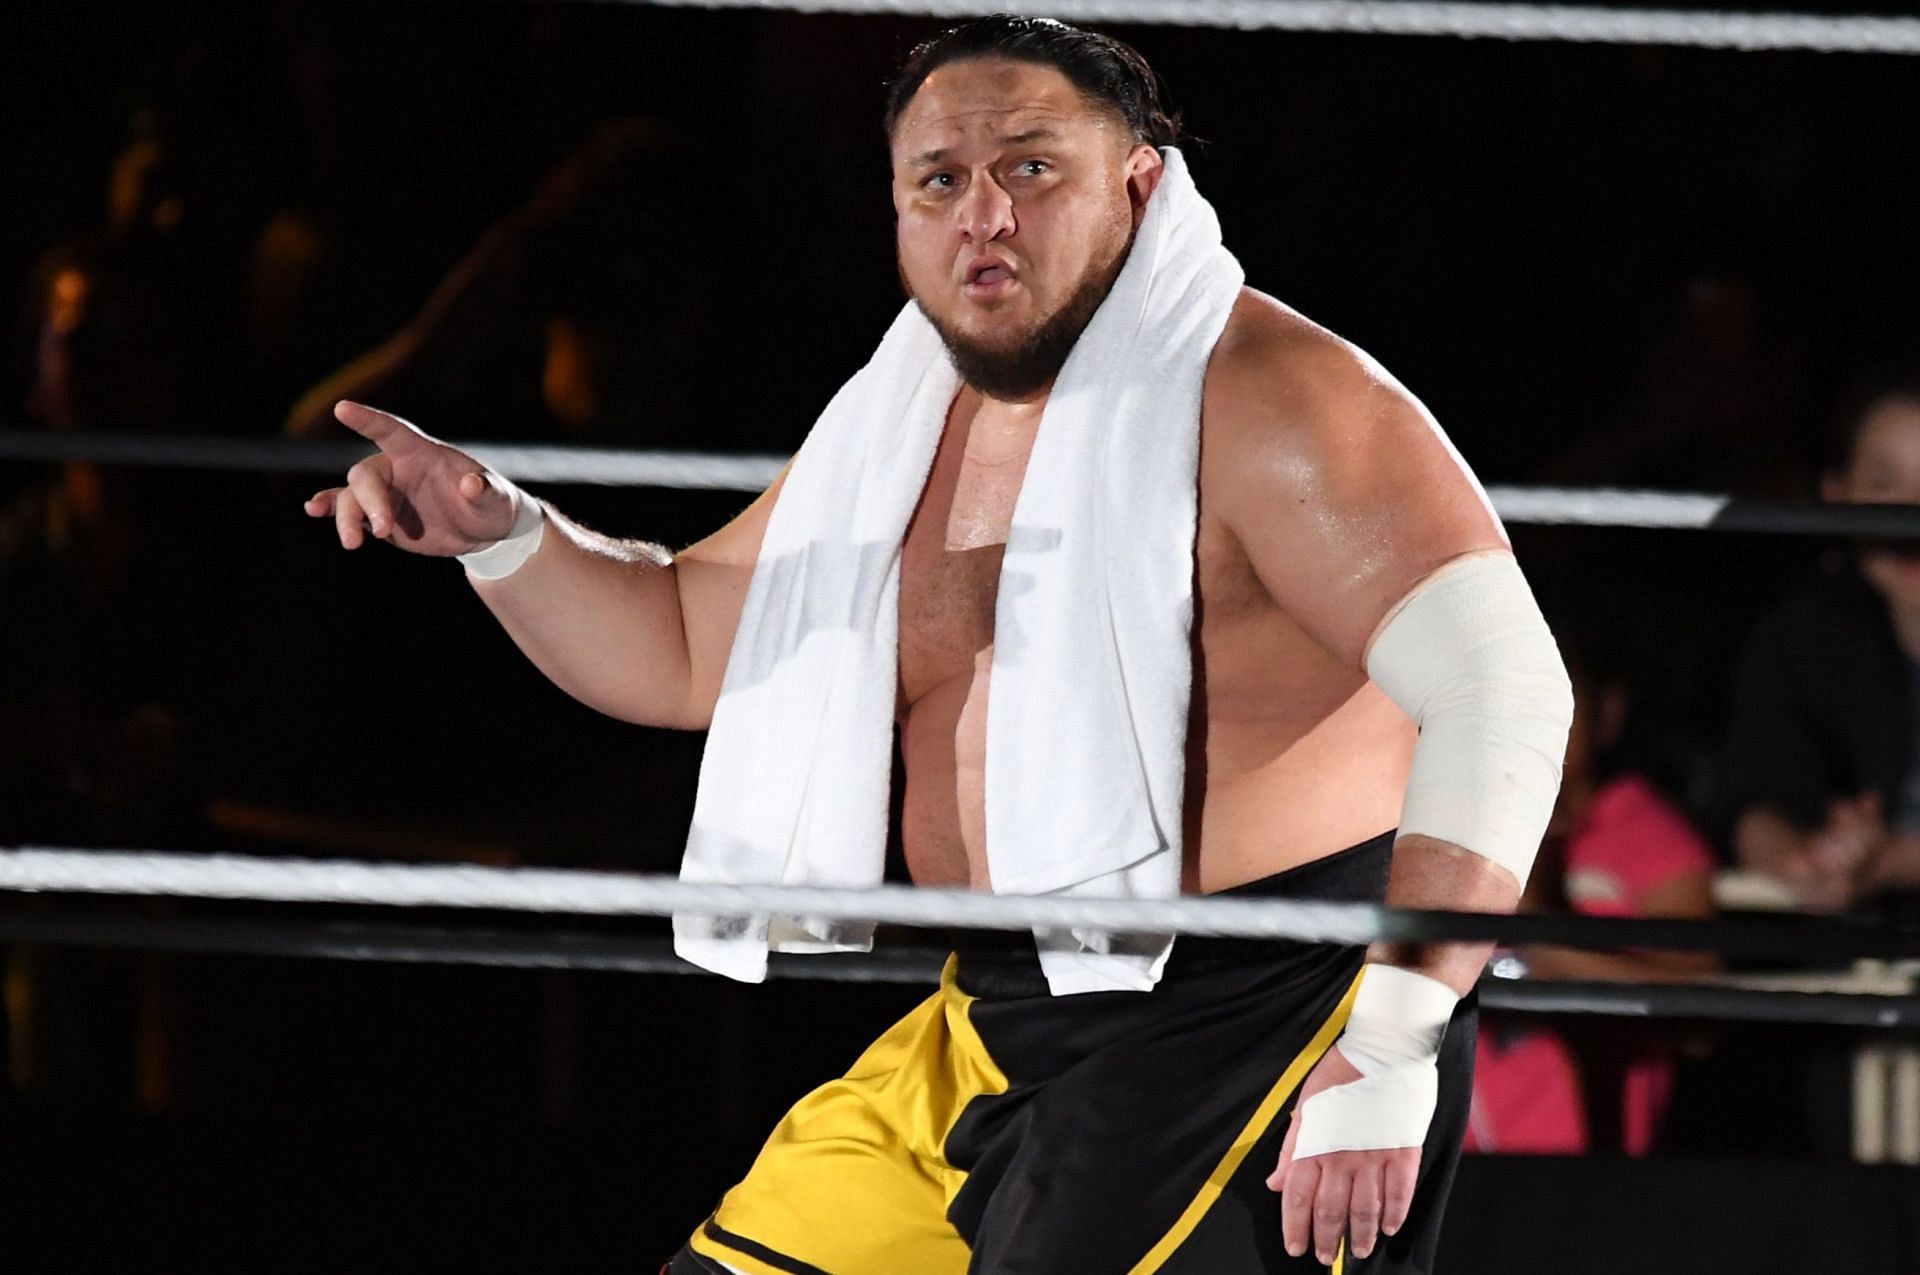 Samoa Joe first won the NXT Championship in 2015